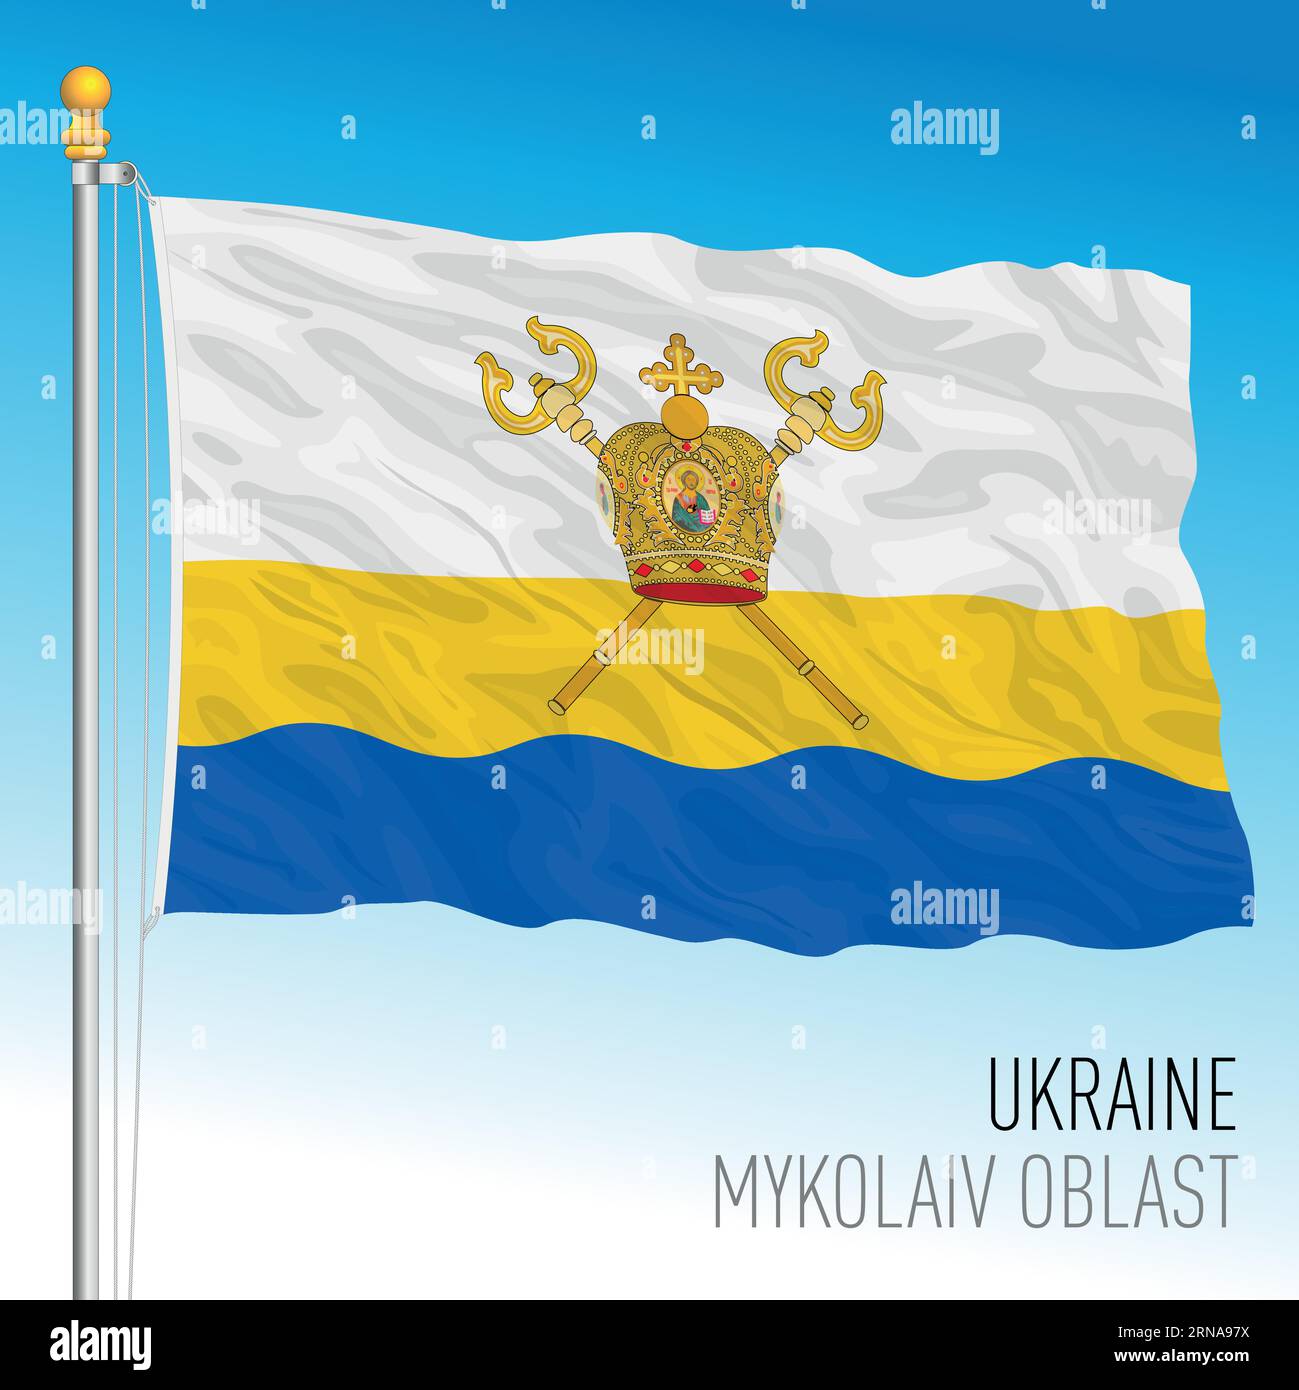 Ukraine, Mykolaiv Oblast waving flag, europe, vector illustration Stock Vector